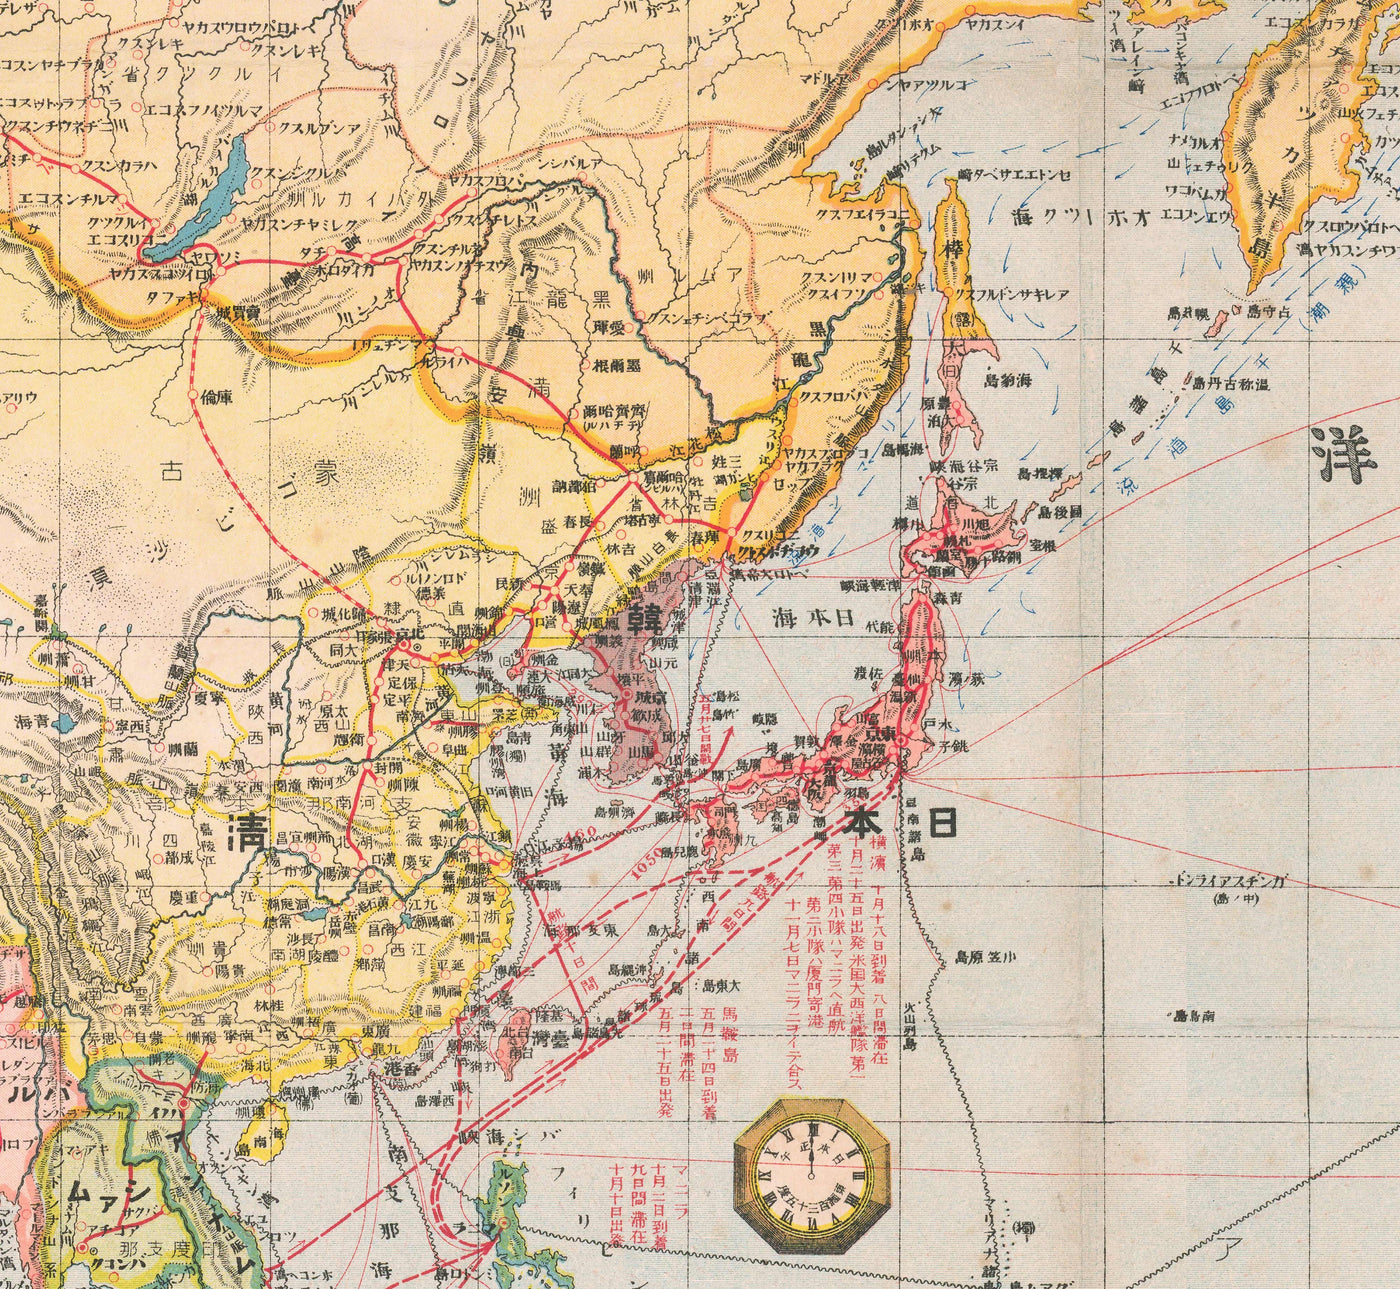 Alte japanische Weltkarte, 1910 - Großer, seltener Atlas - Japan, Schifffahrtswege, Strömungen, Handelsmarine, Eisenbahnen